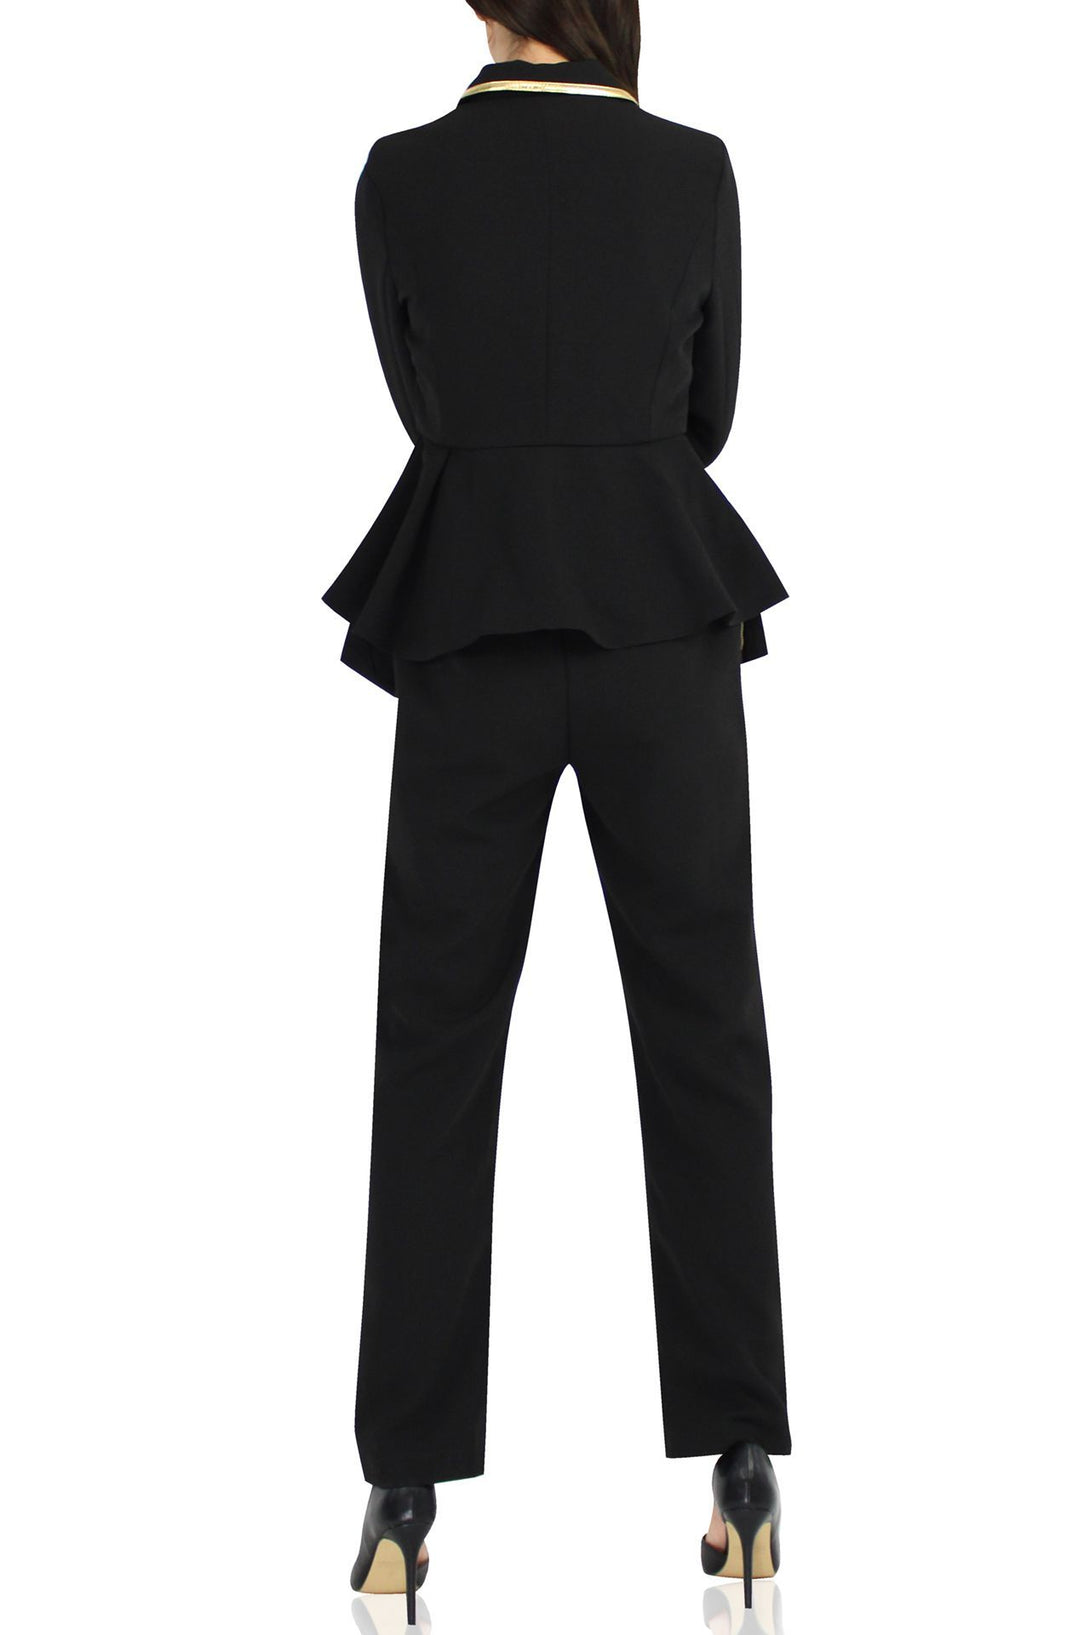 Kyle-Women-Designer-Black-Matching-Suit